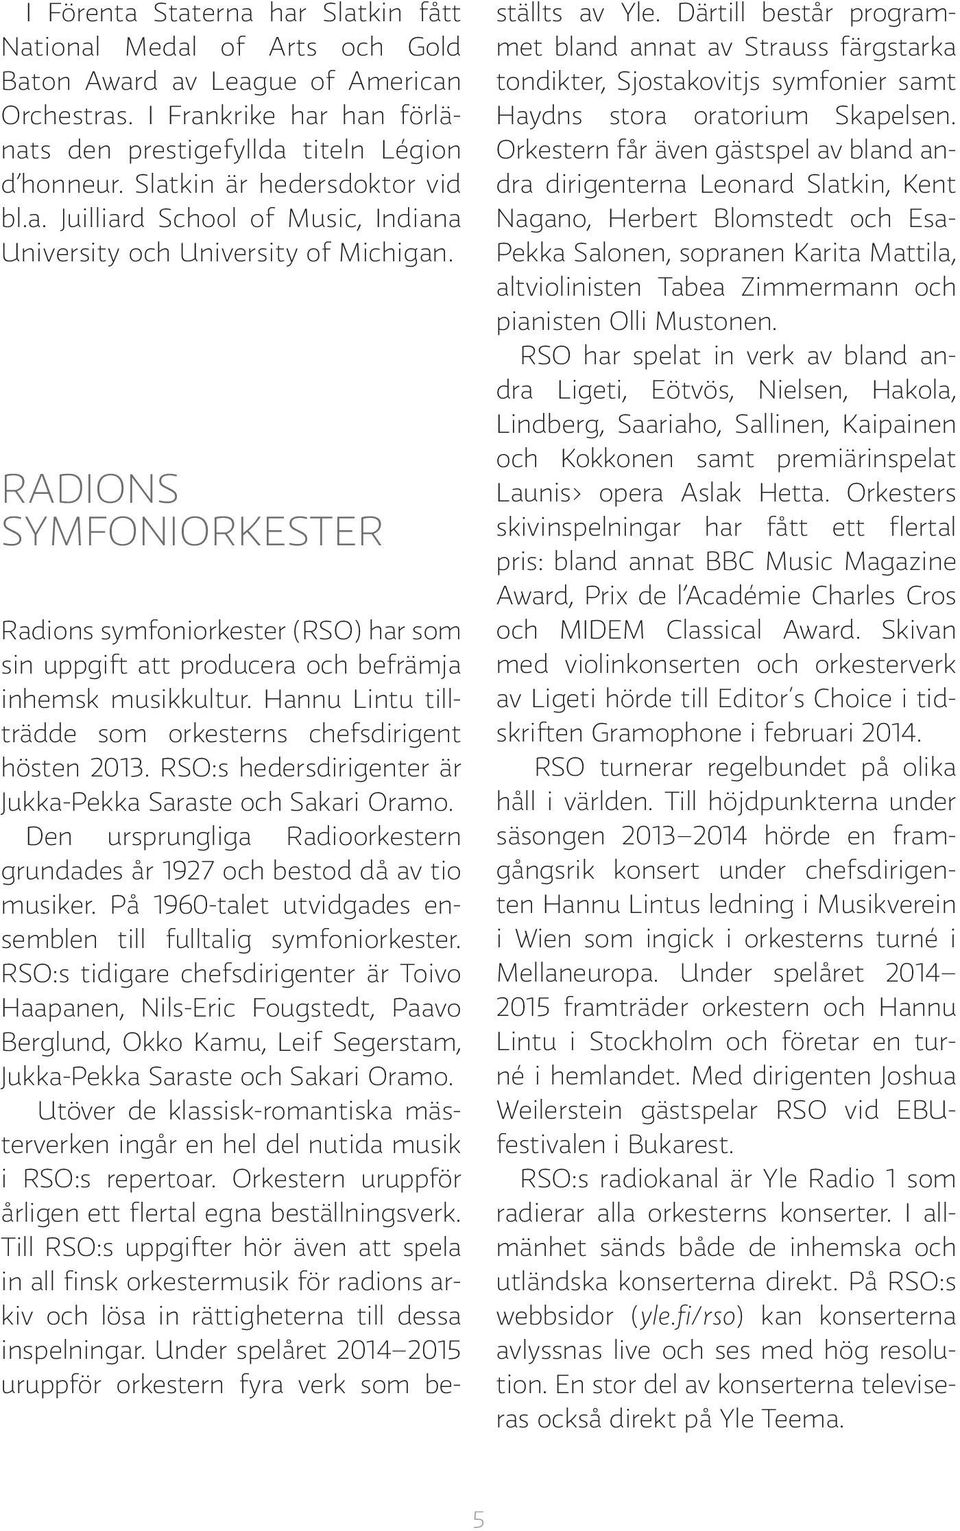 RADIONS SYMFONIORKESTER Radions symfoniorkester (RSO) har som sin uppgift att producera och befrämja inhemsk musikkultur. Hannu Lintu tillträdde som orkesterns chefsdirigent hösten 2013.